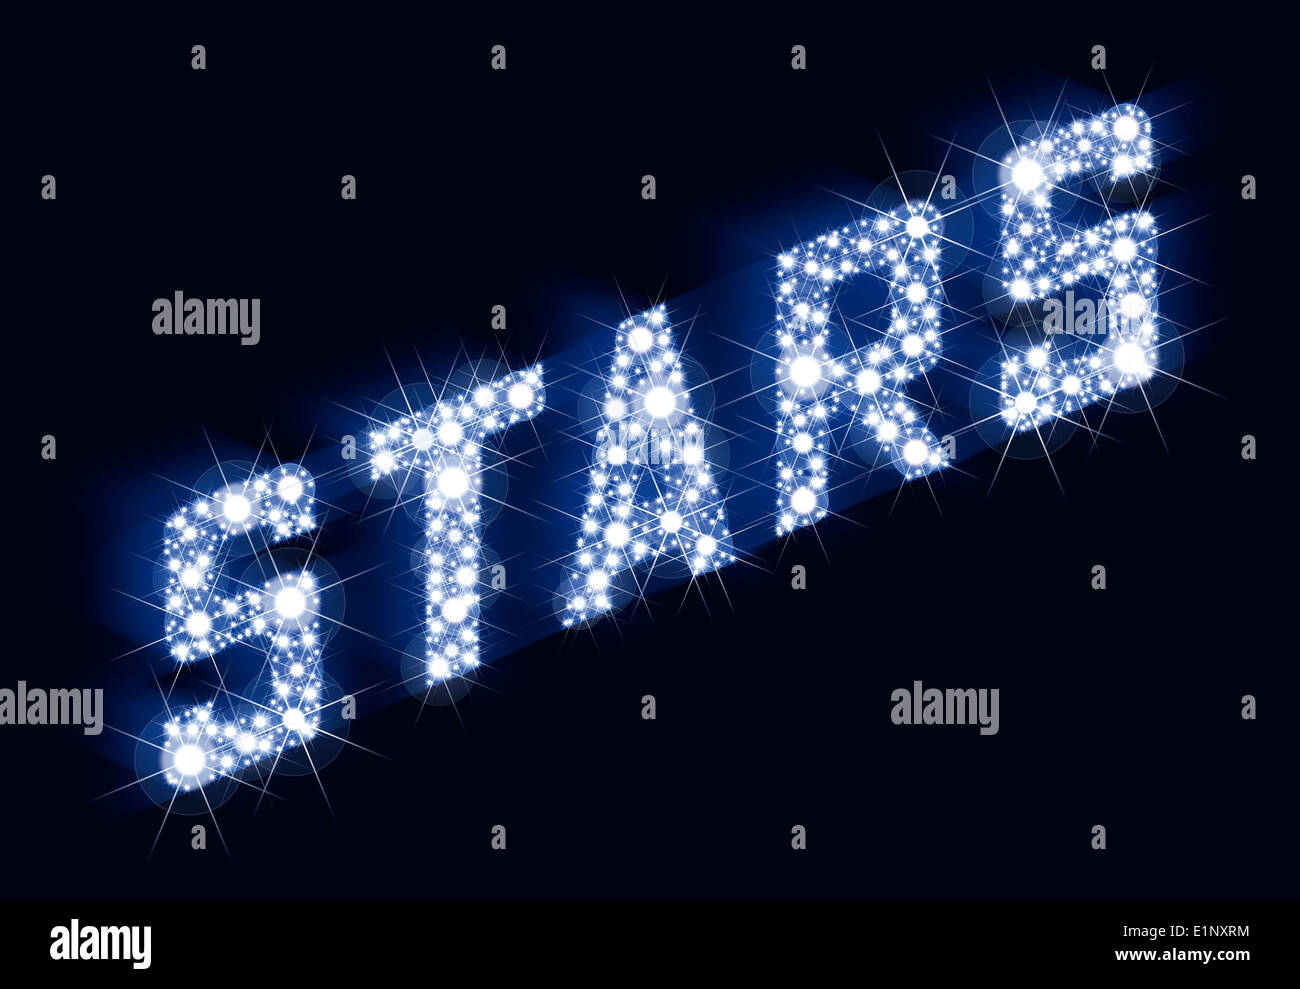 Sterne funkeln Schriftzug Made Of Stars - eine Menge Sterne Ergebnis in den Schriftzug-Sternen. Darstellung auf schwarzem Hintergrund. Stockfoto